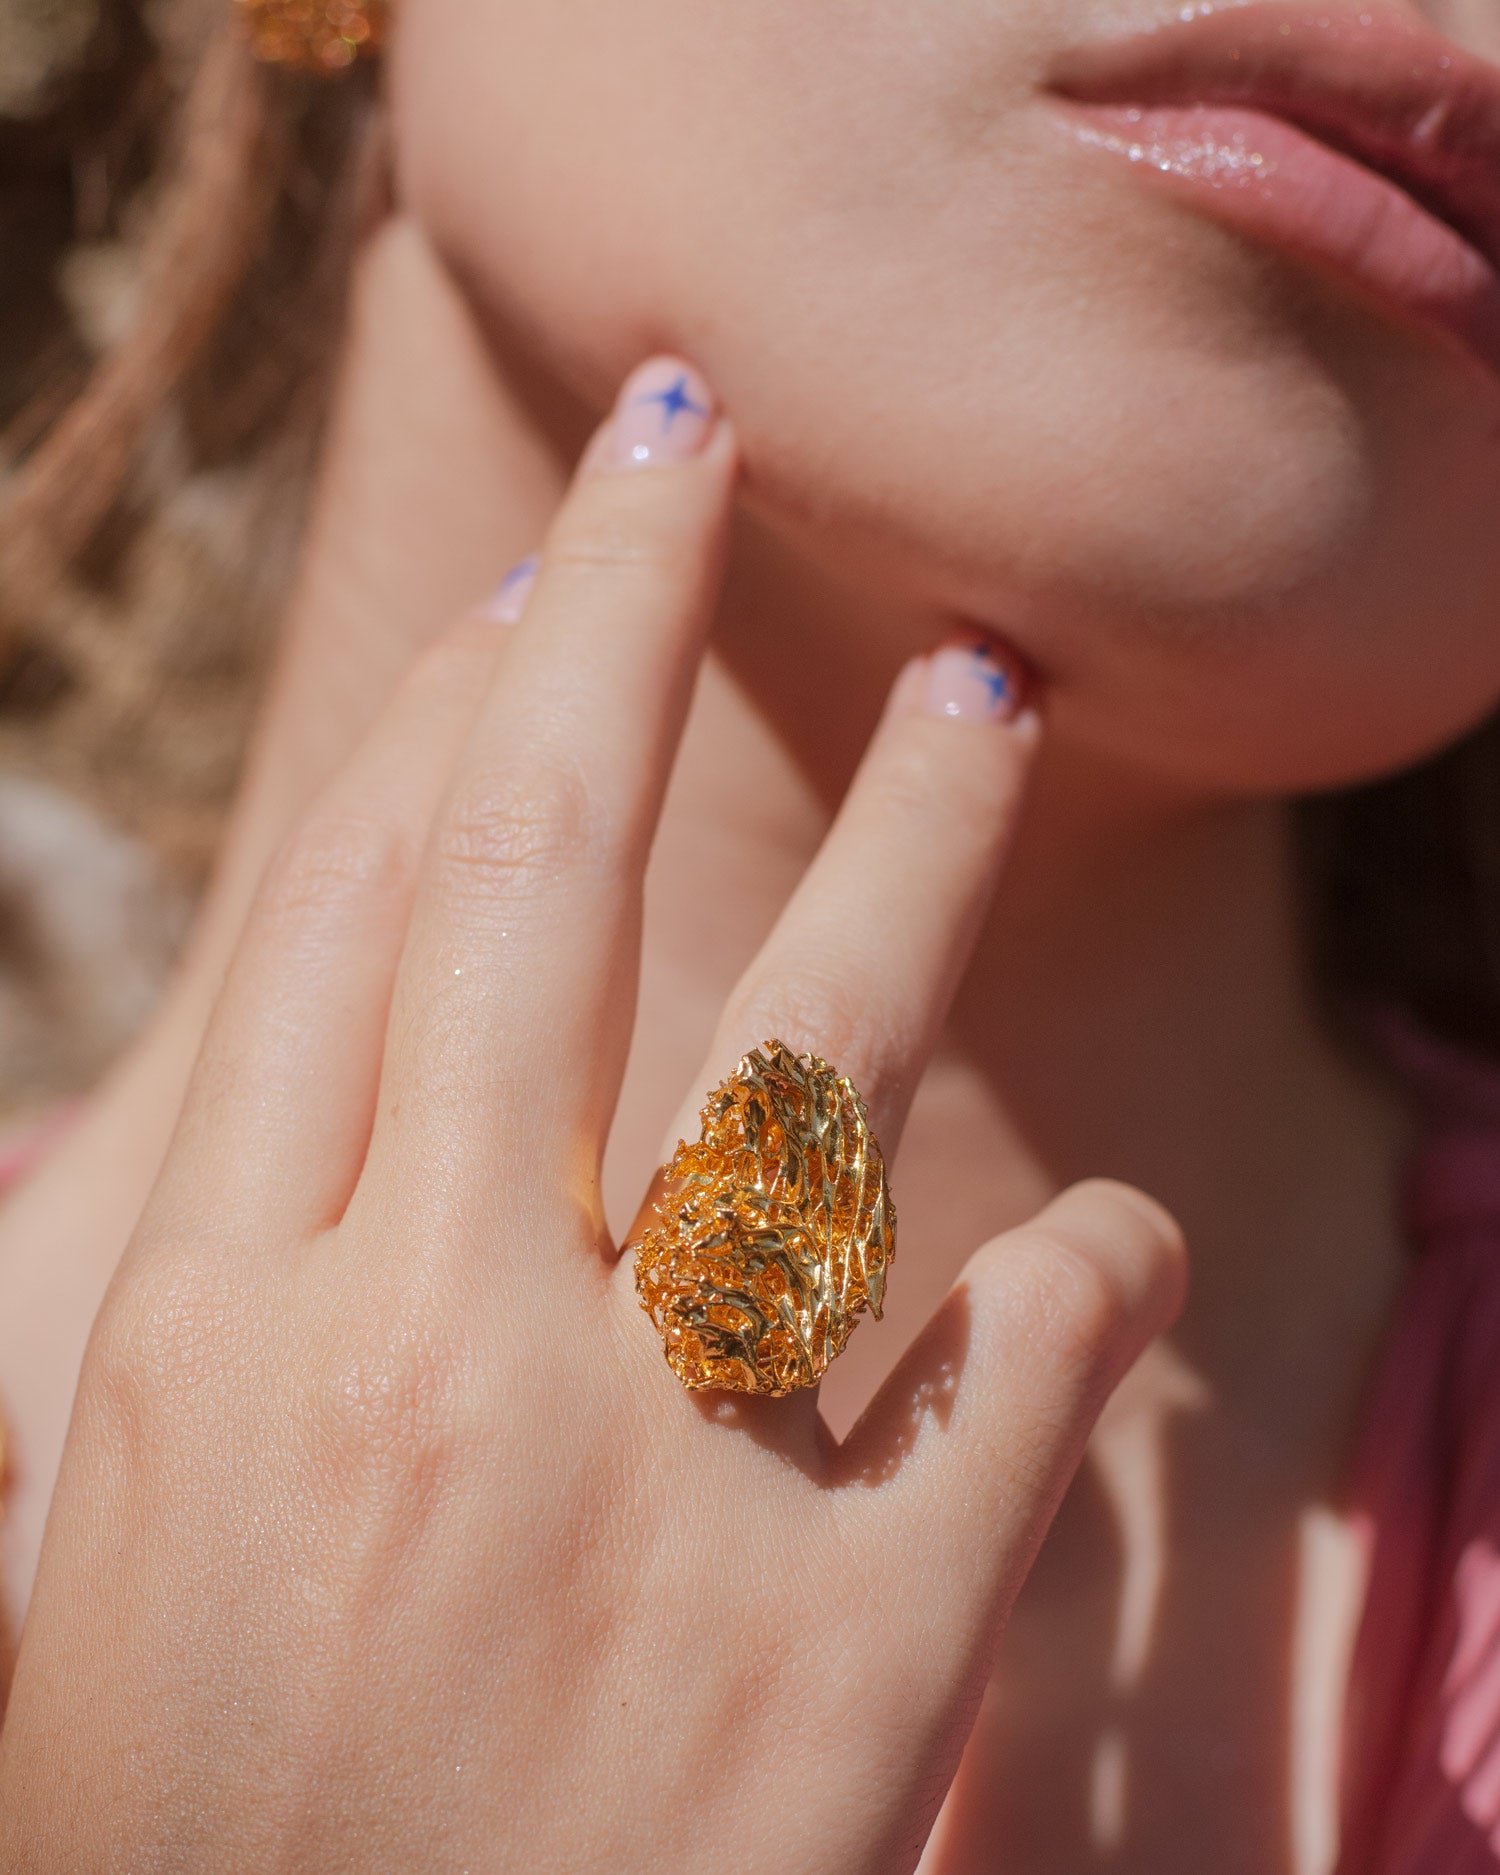 Anillo Luffa Estropajo Redondo de oro brillante en el dedo anular de una mano femenina, destacando su textura única y detallada inspirada en una esponja vegetal, bajo la luz del sol que realza su acabado metálico